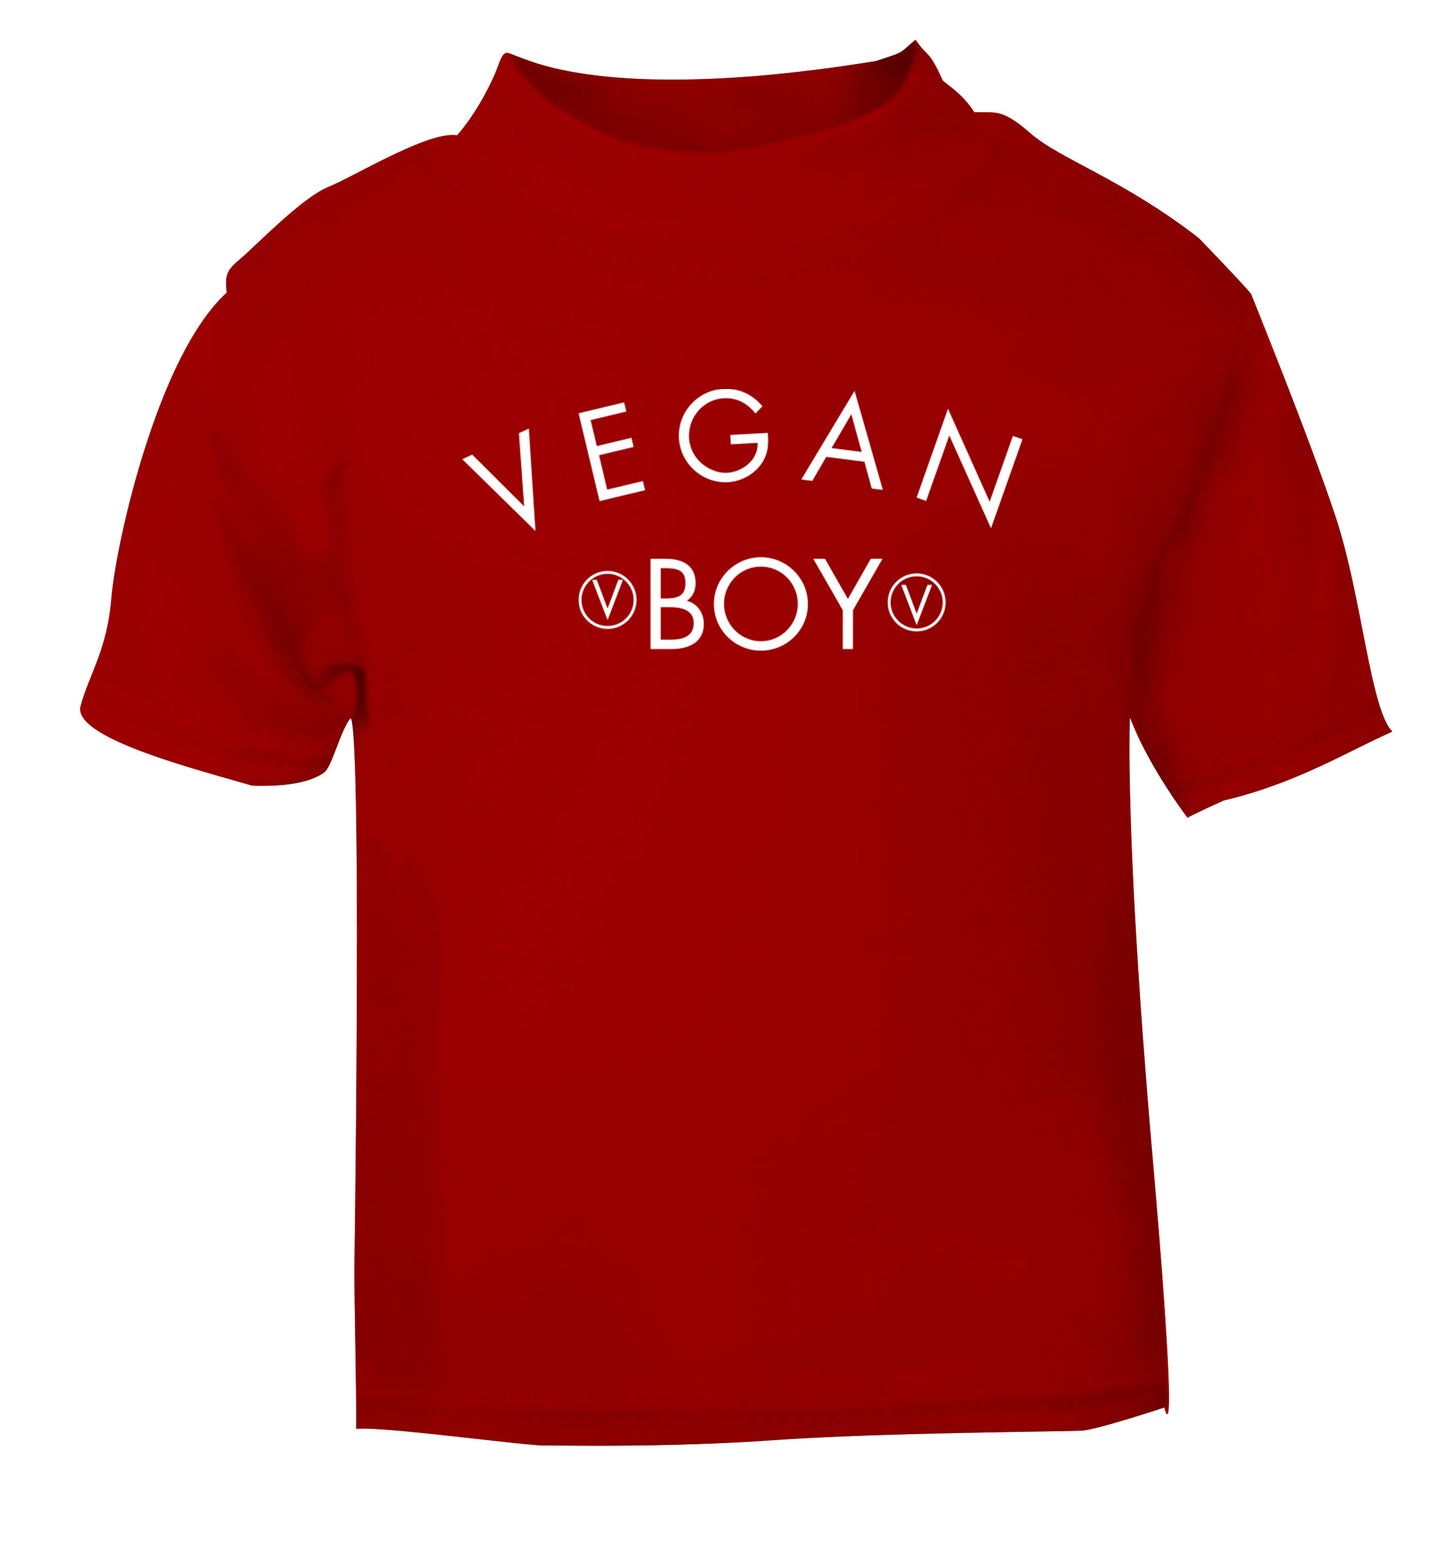 Vegan boy red Baby Toddler Tshirt 2 Years